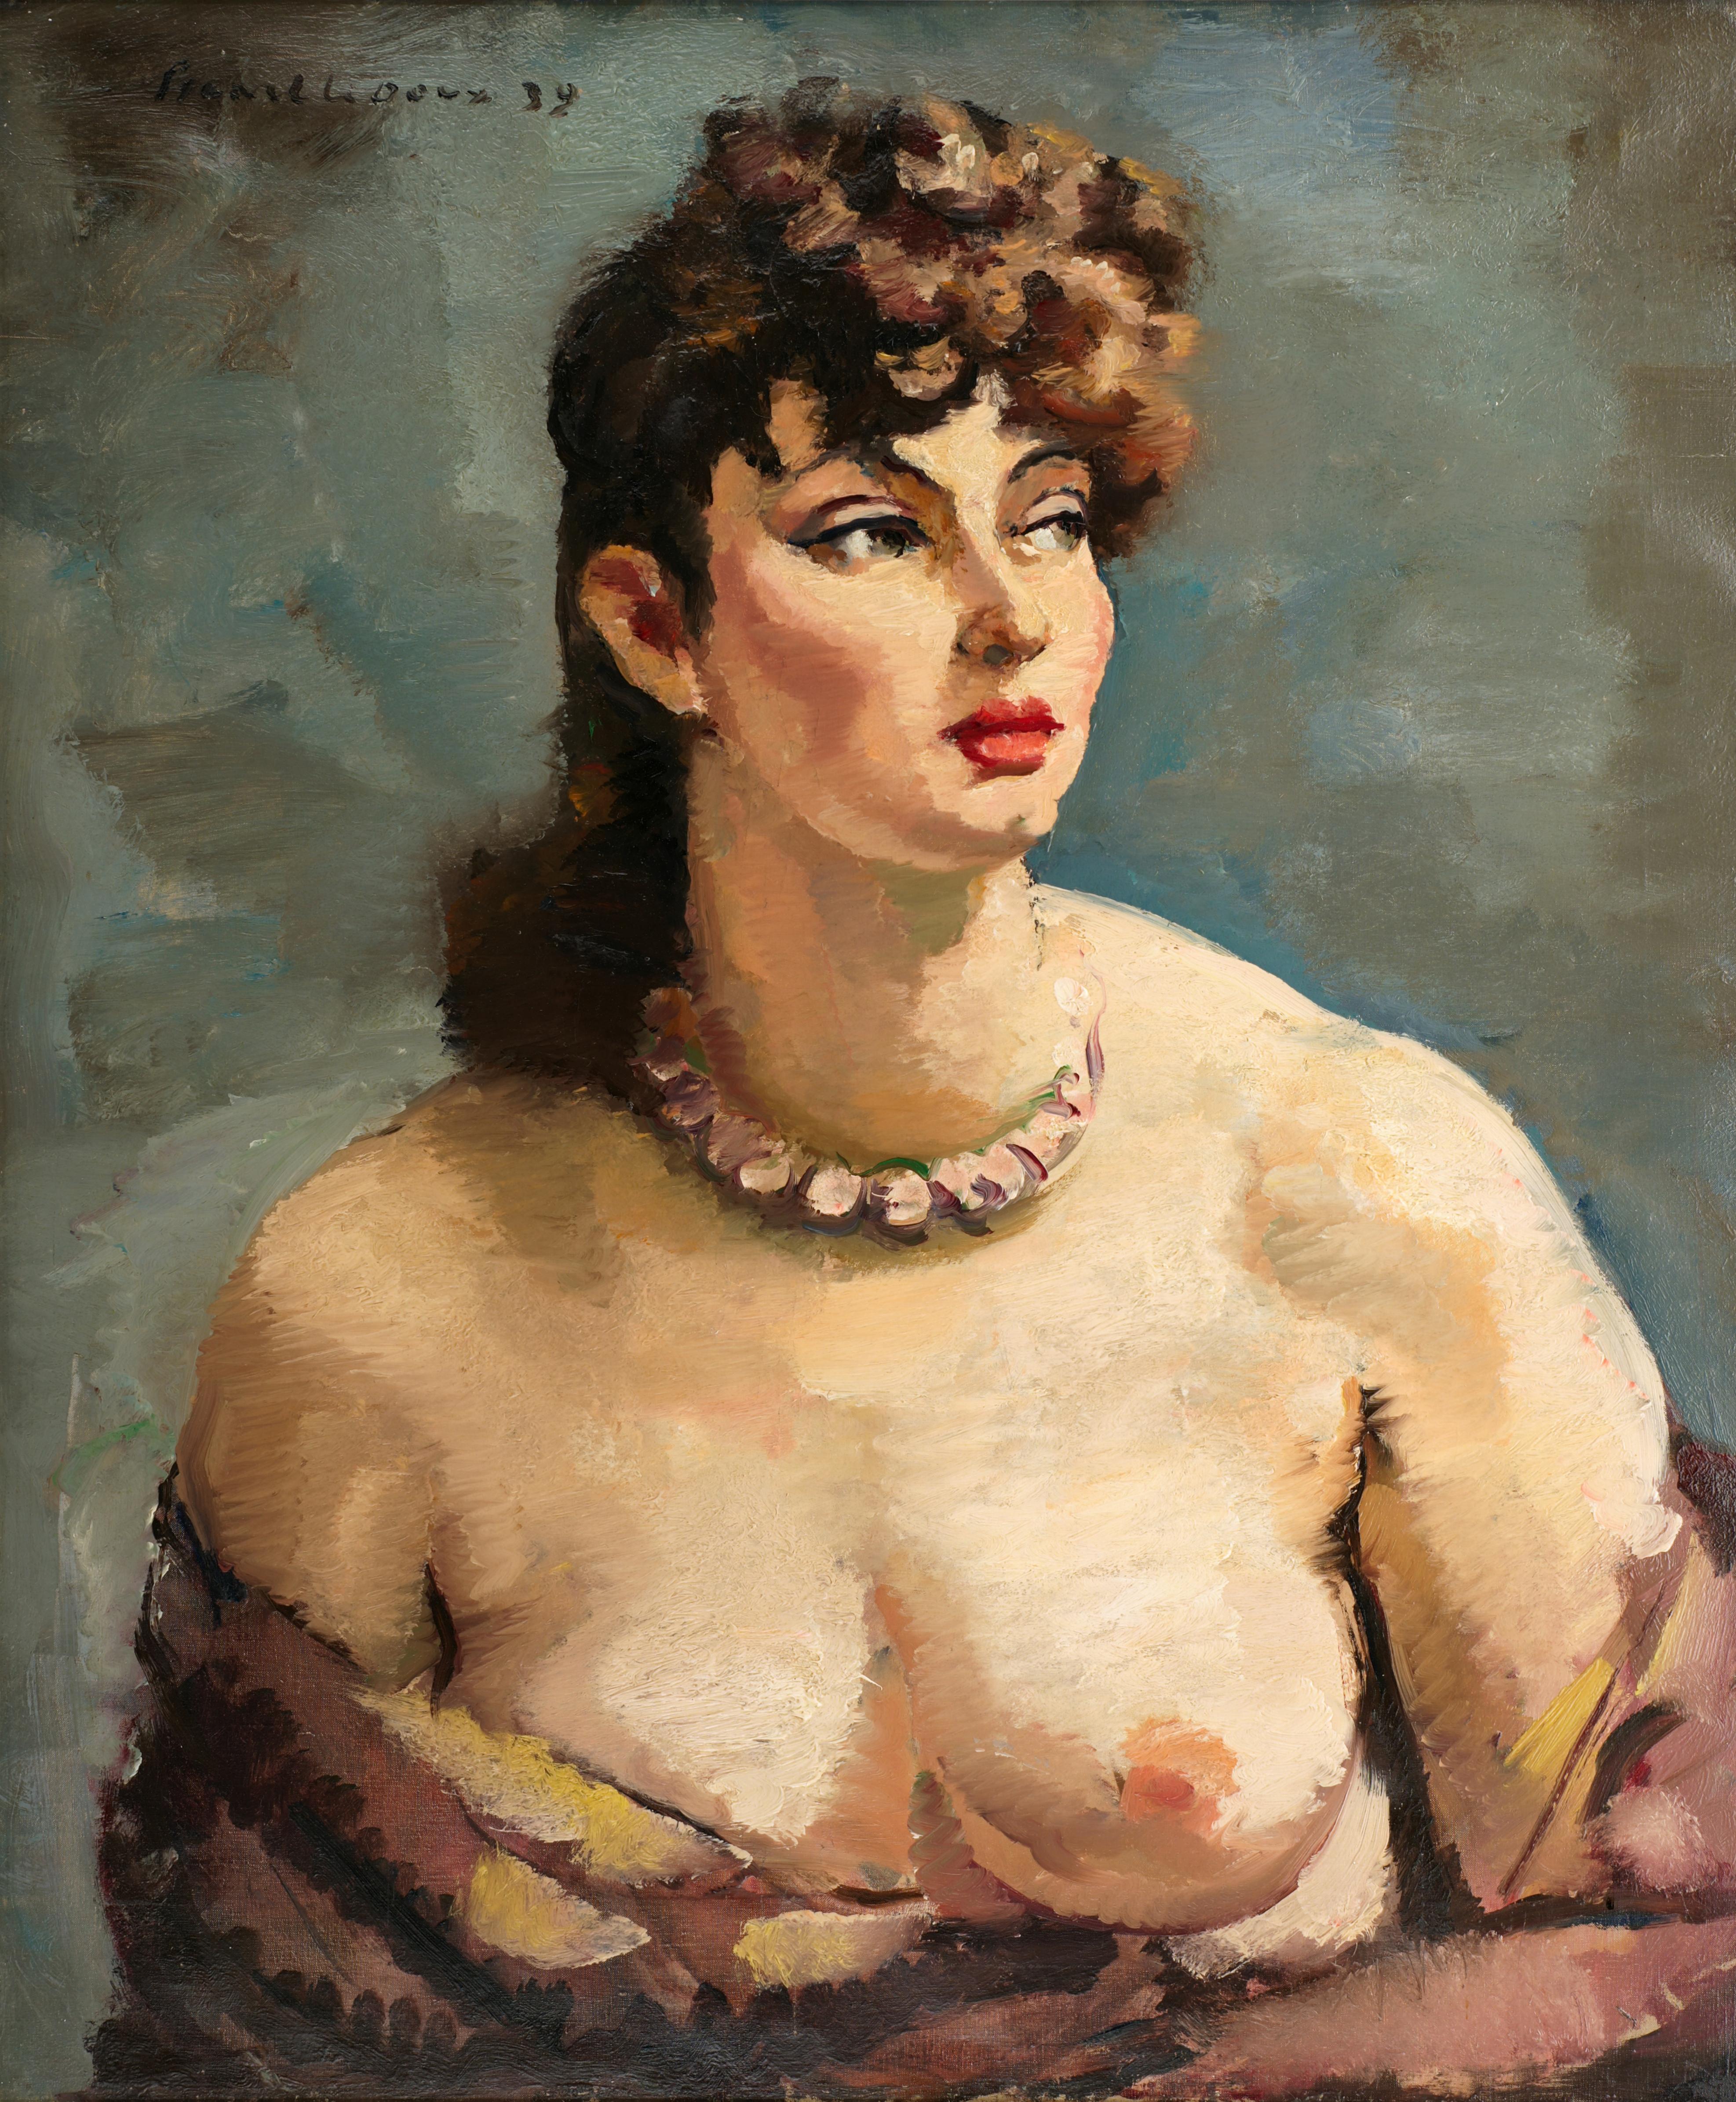 Charles PICART LE DOUX, Das schöne Mädchen, Öl auf Leinwand, 1939 – Painting von Charles Picart le Doux